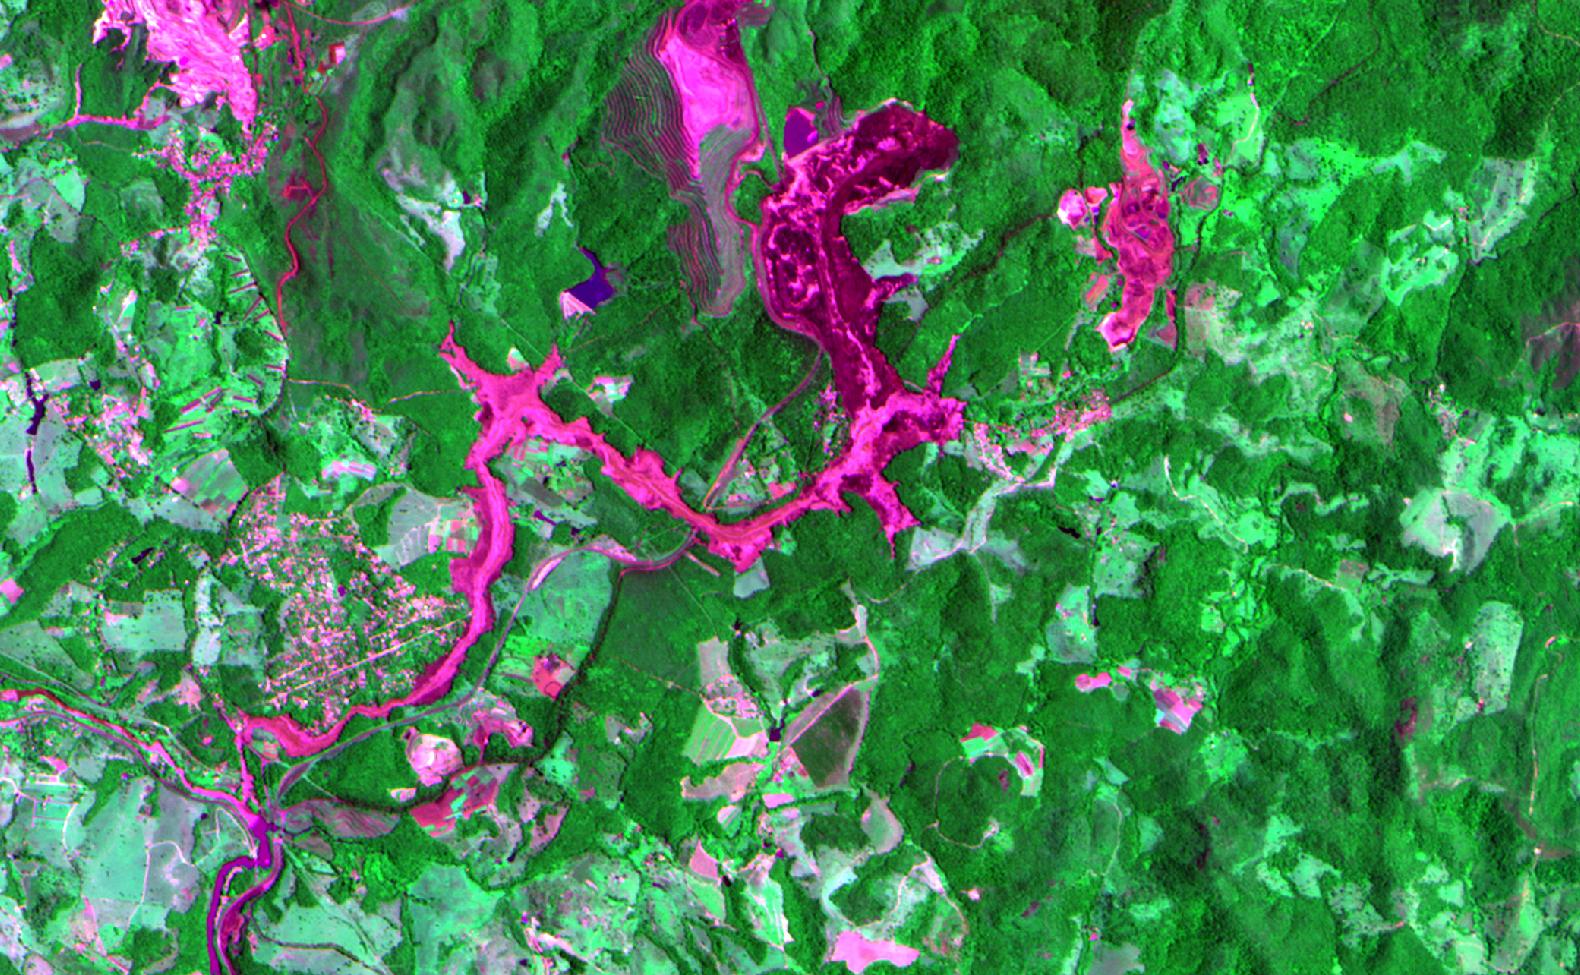 Figura 2 - imagem CBERS-4 da região de Brumadinho/MG após desastre